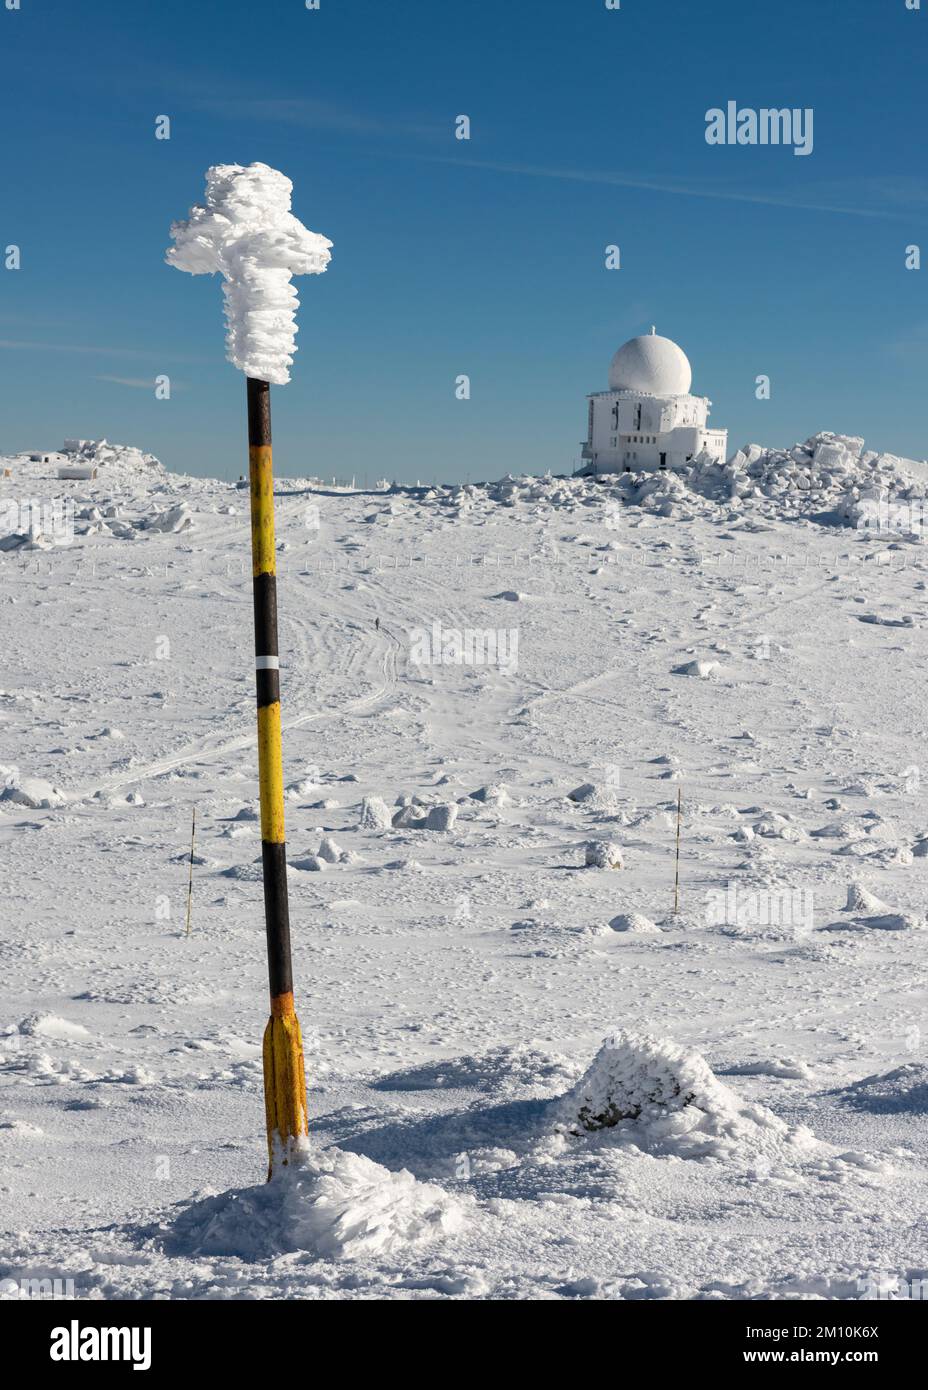 Pôle de marqueur de niveau de neige et station de radar météorologique  Doppler près de Black Peak dans la montagne Vitosha près de Sofia, Bulgarie  Photo Stock - Alamy